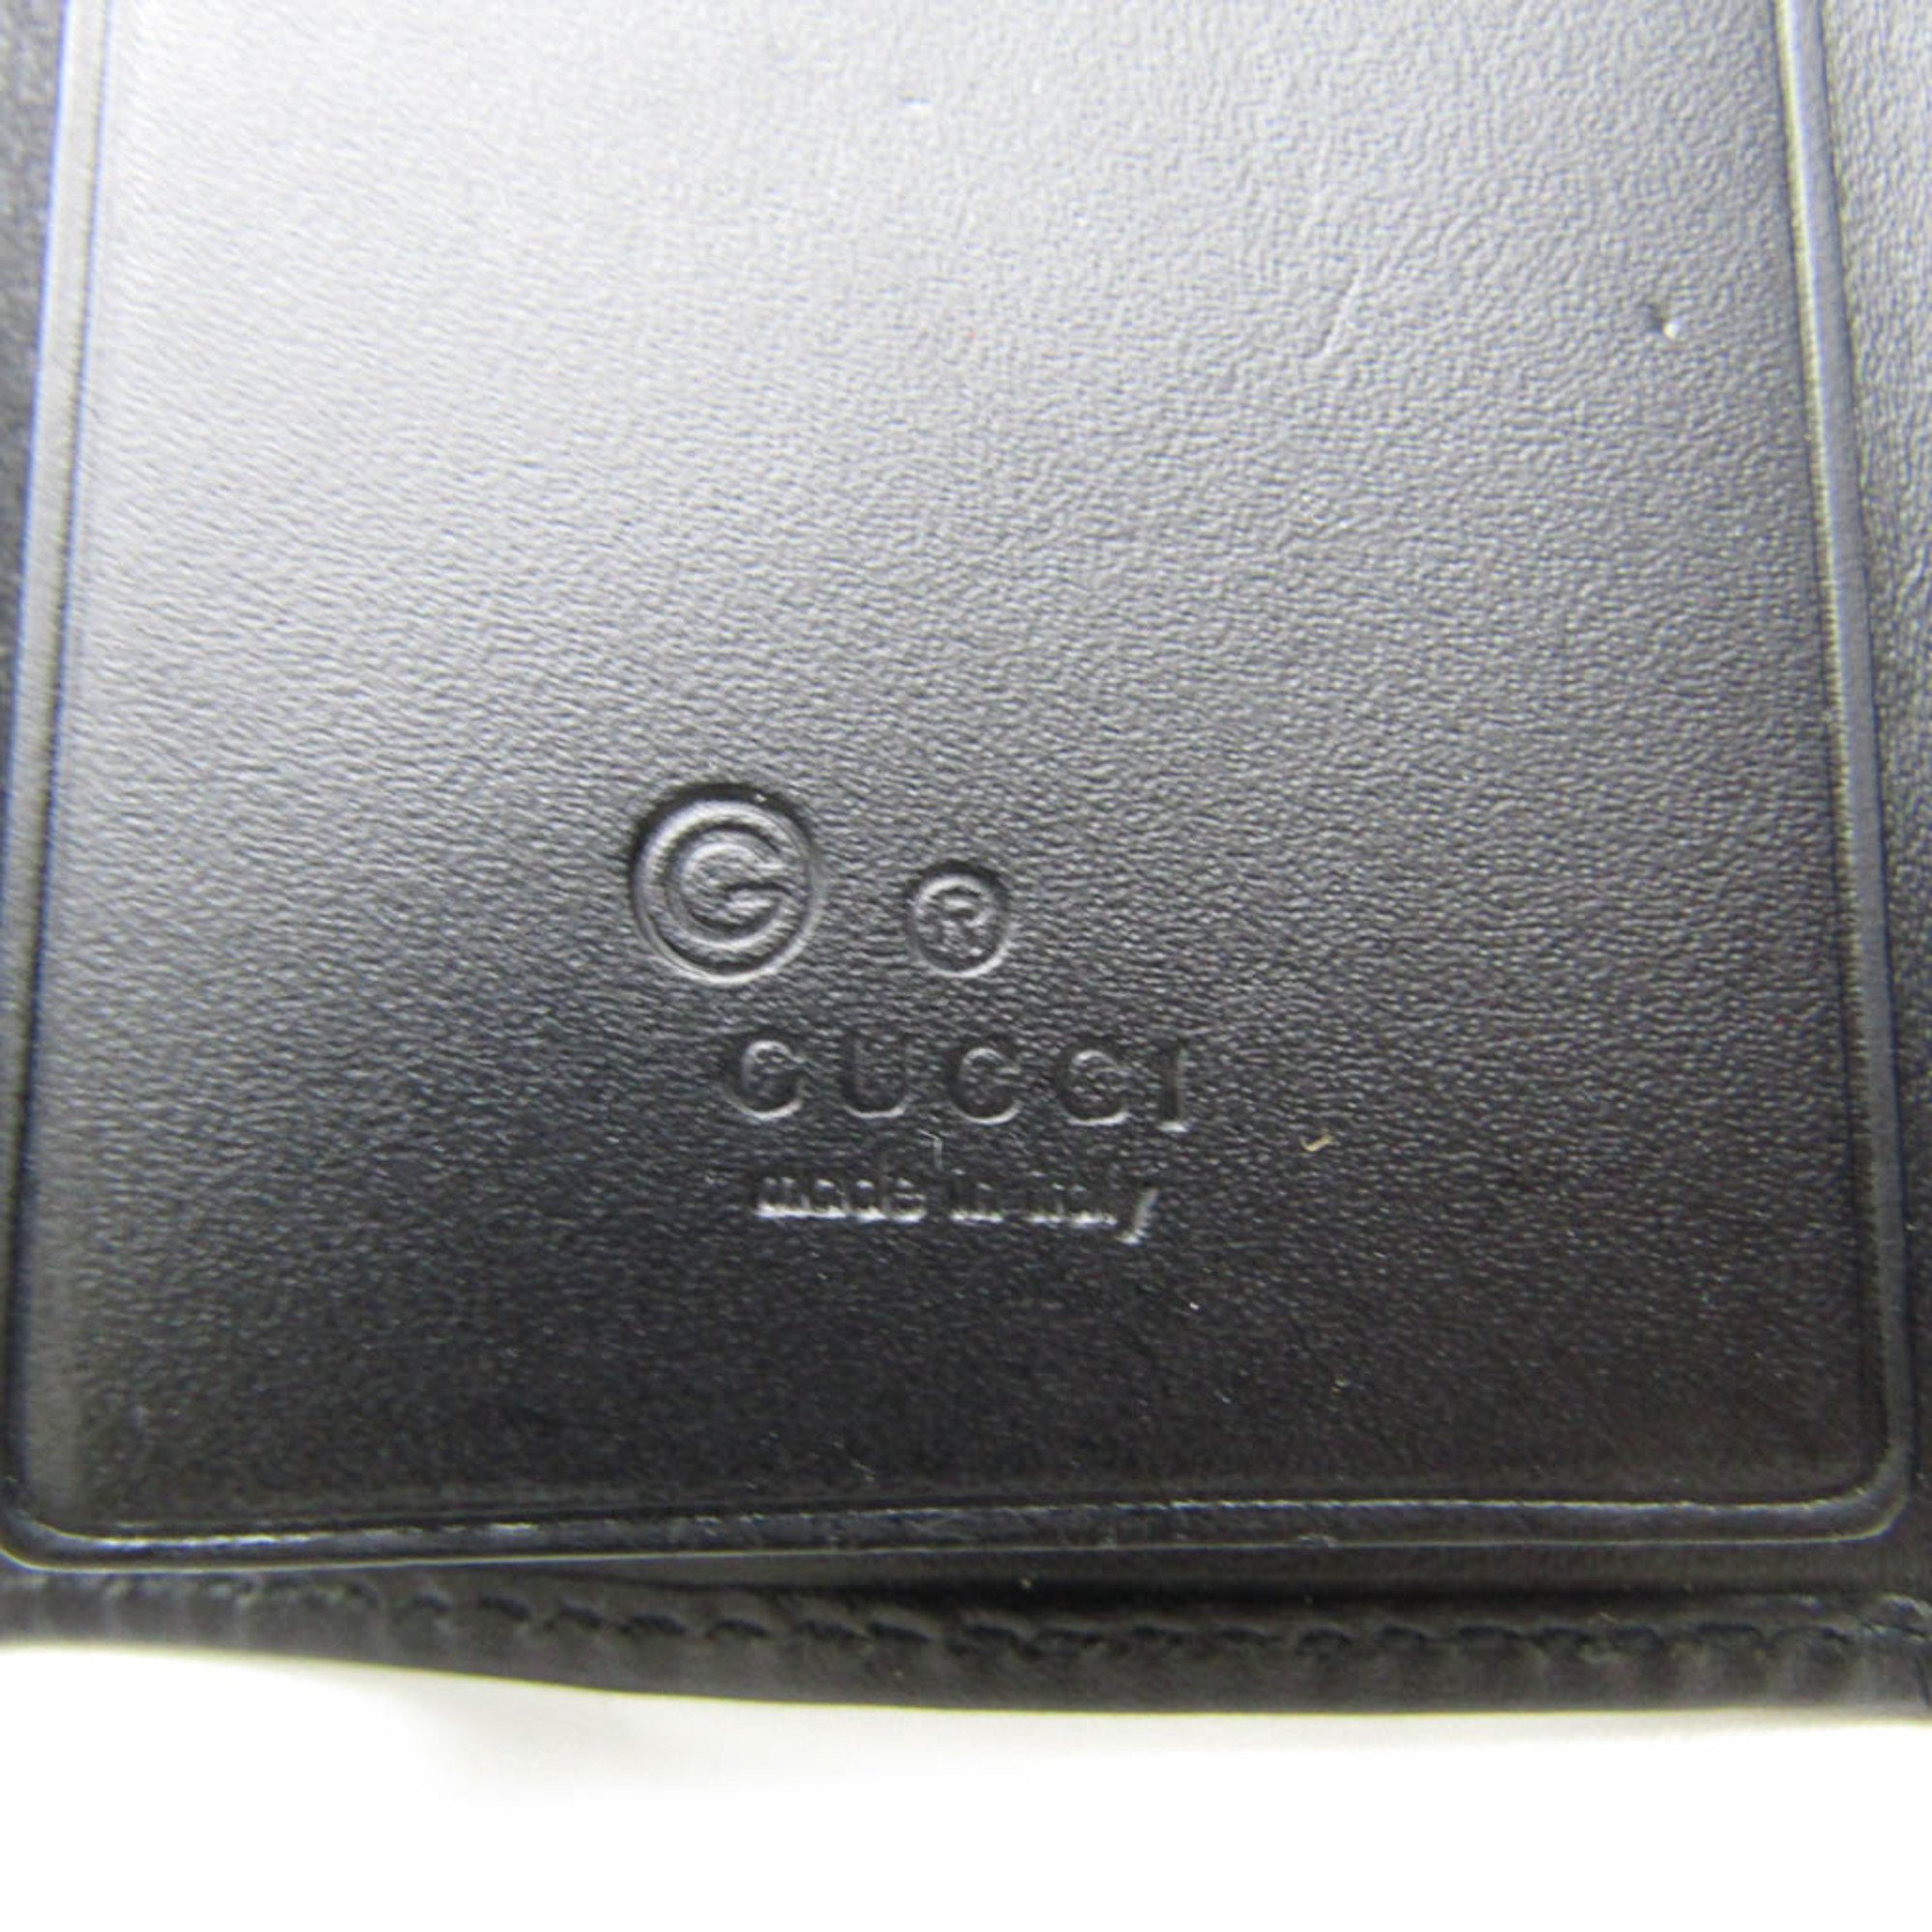 グッチ(Gucci) 150402 メンズ,レディース レザー GGキャンバス キーケース ブラック